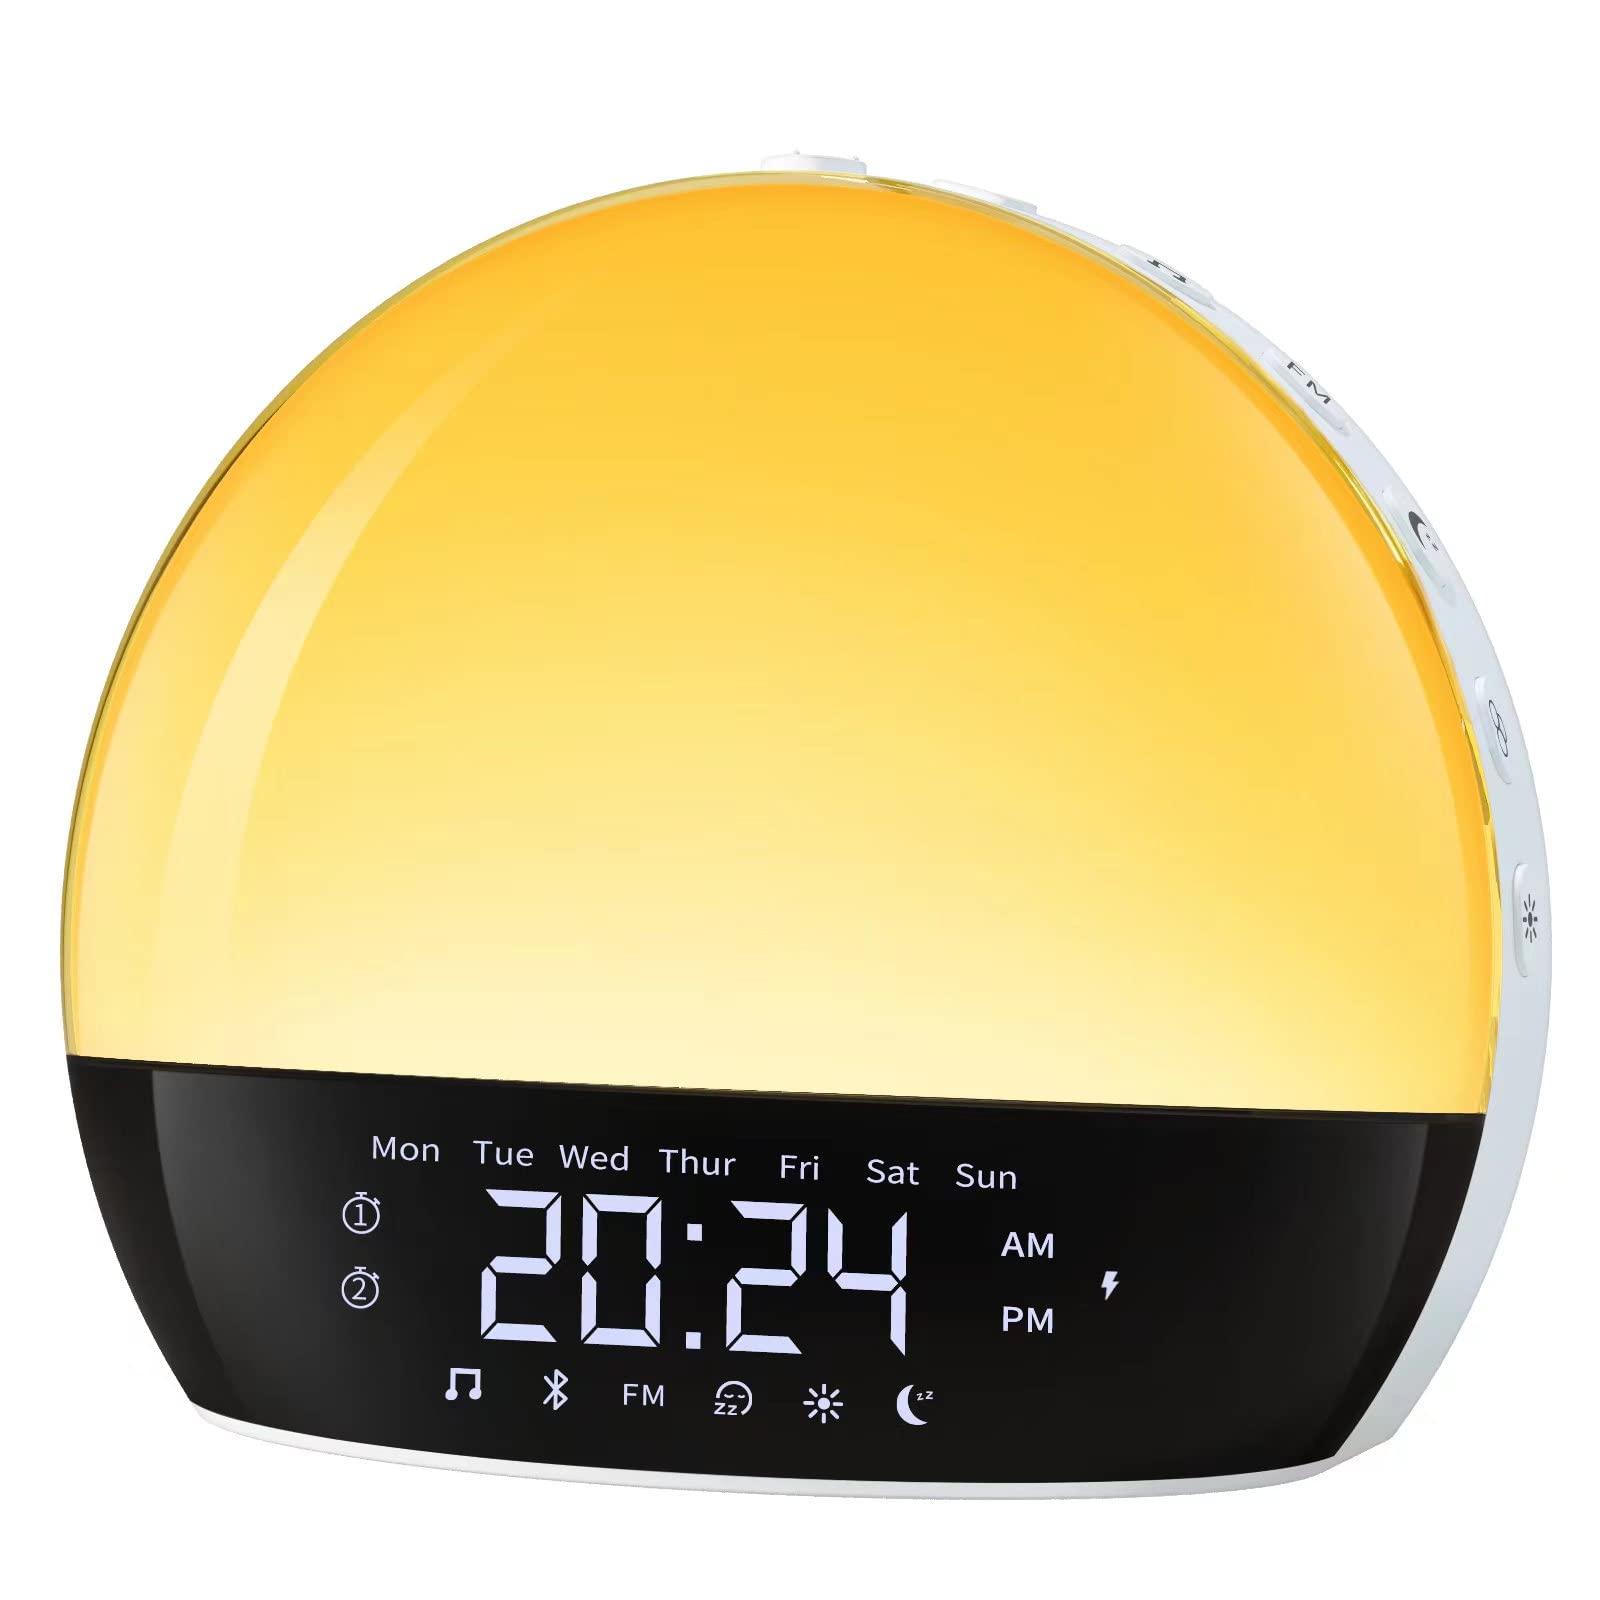 Cabtick Sunrise Alarm Clock